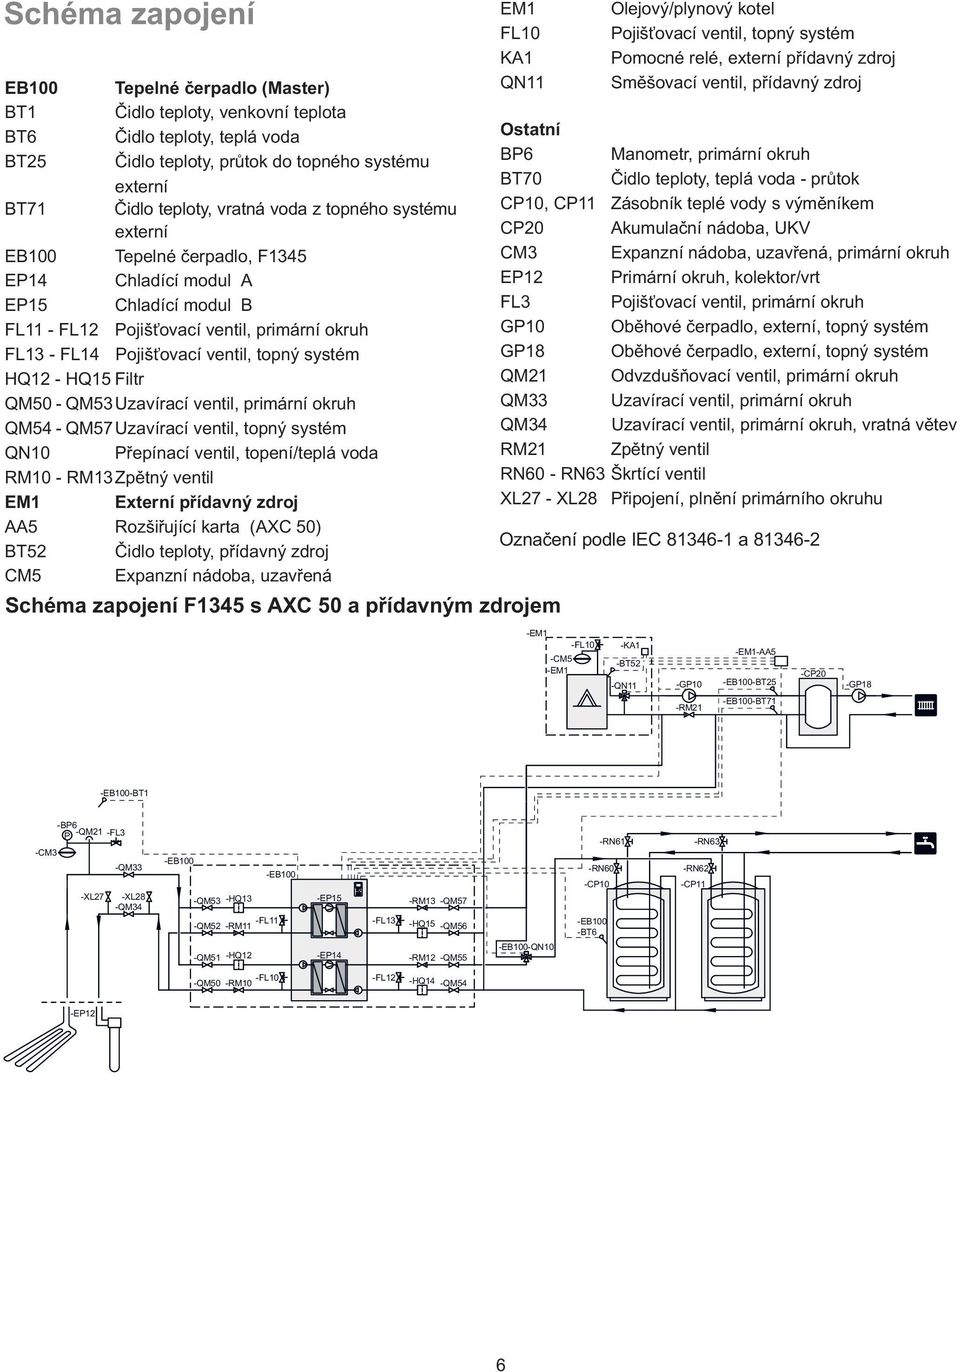 Uzavírací ventil, primární okruh QM - QM Uzavírací ventil, topný systém QN0 Přepínací ventil, topení/teplá voda RM0 - RM Zpětný ventil EM Externí přídavný zdroj AA Rozšiřující karta (AXC 0) BT Čidlo